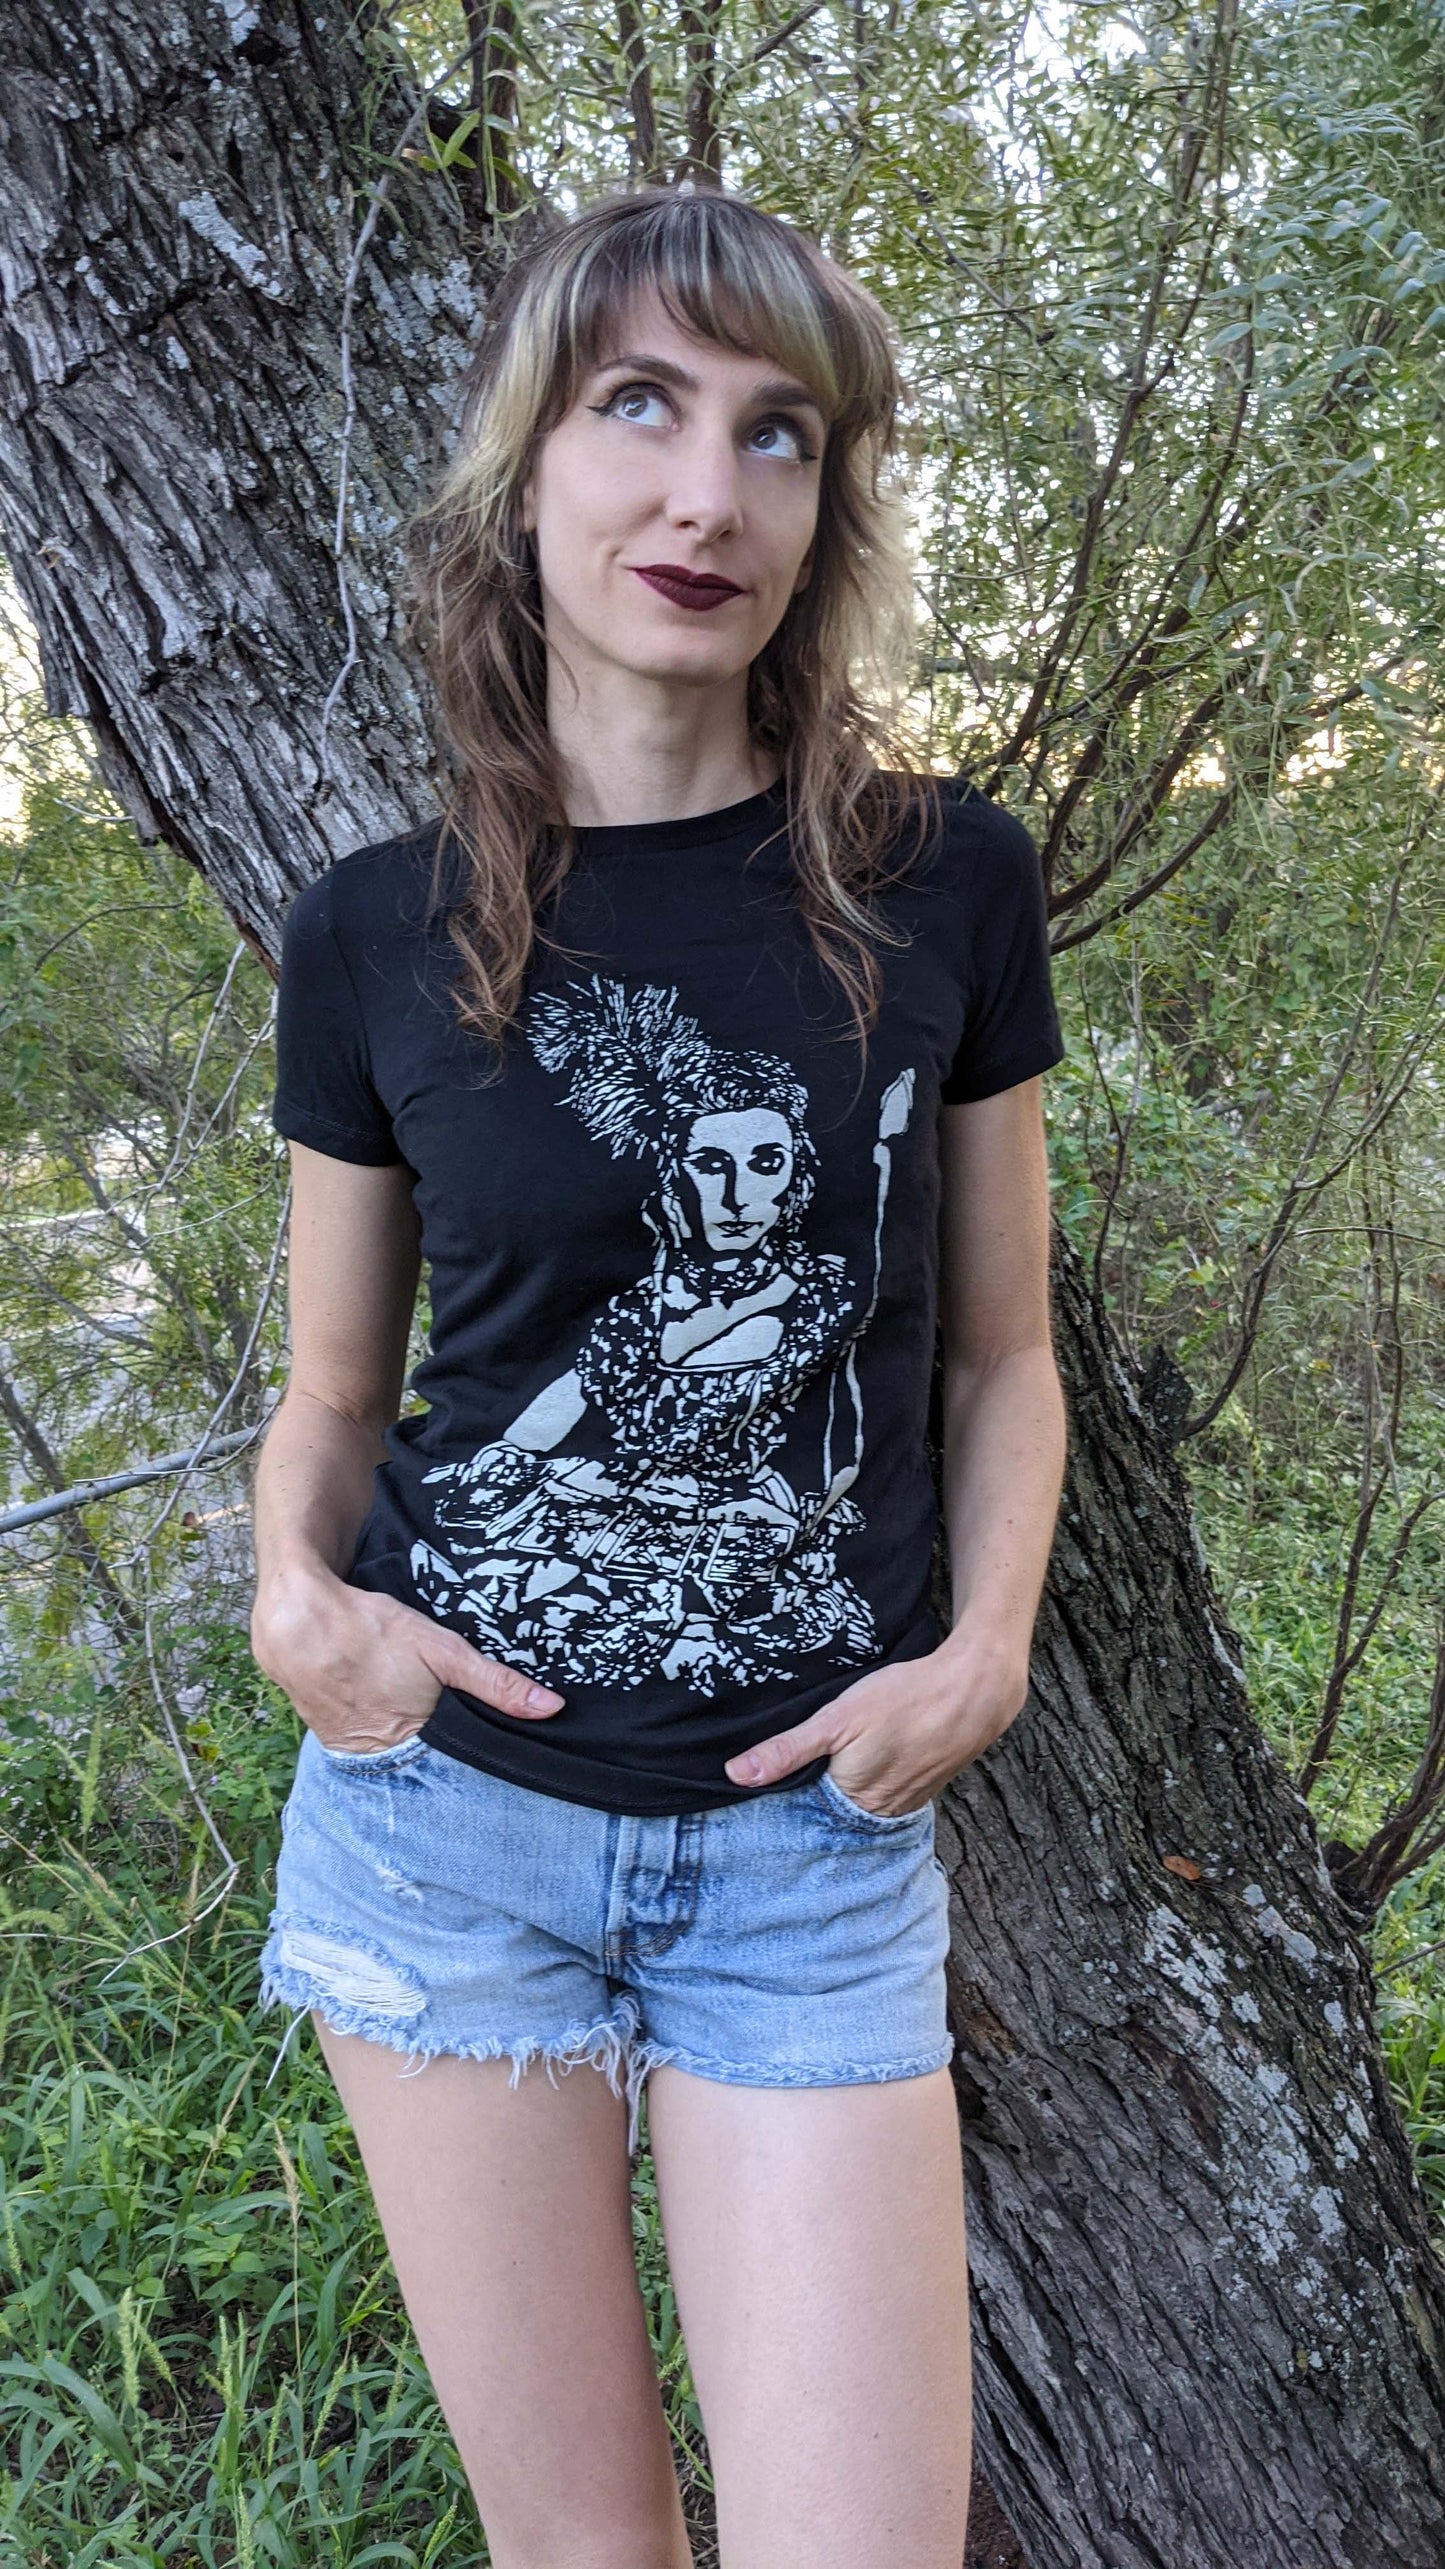 Tarot Reader - Women's Cut Black T-Shirt